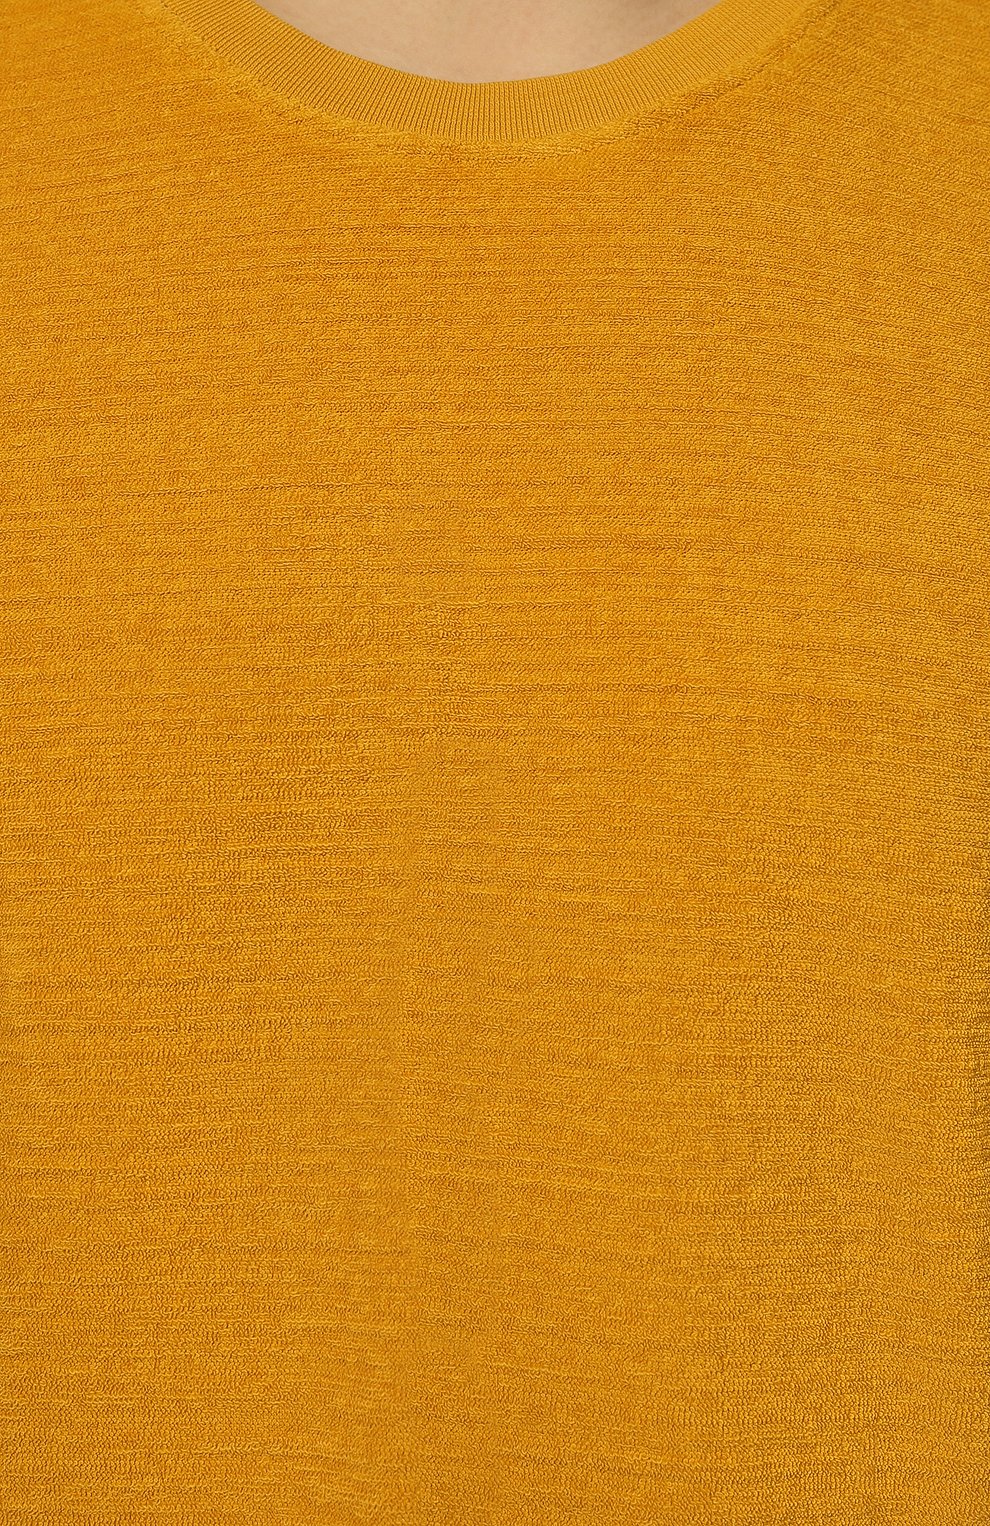 Мужская хлопковая футболка ORLEBAR BROWN желтого цвета, арт. 274715 | Фото 5 (Мужское Кросс-КТ: Футболка-пляж; Принт: Без принта; Рукава: Короткие; Длина (для топов): Удлиненные; Материал внешний: Хлопок; Стили: Кэжуэл)